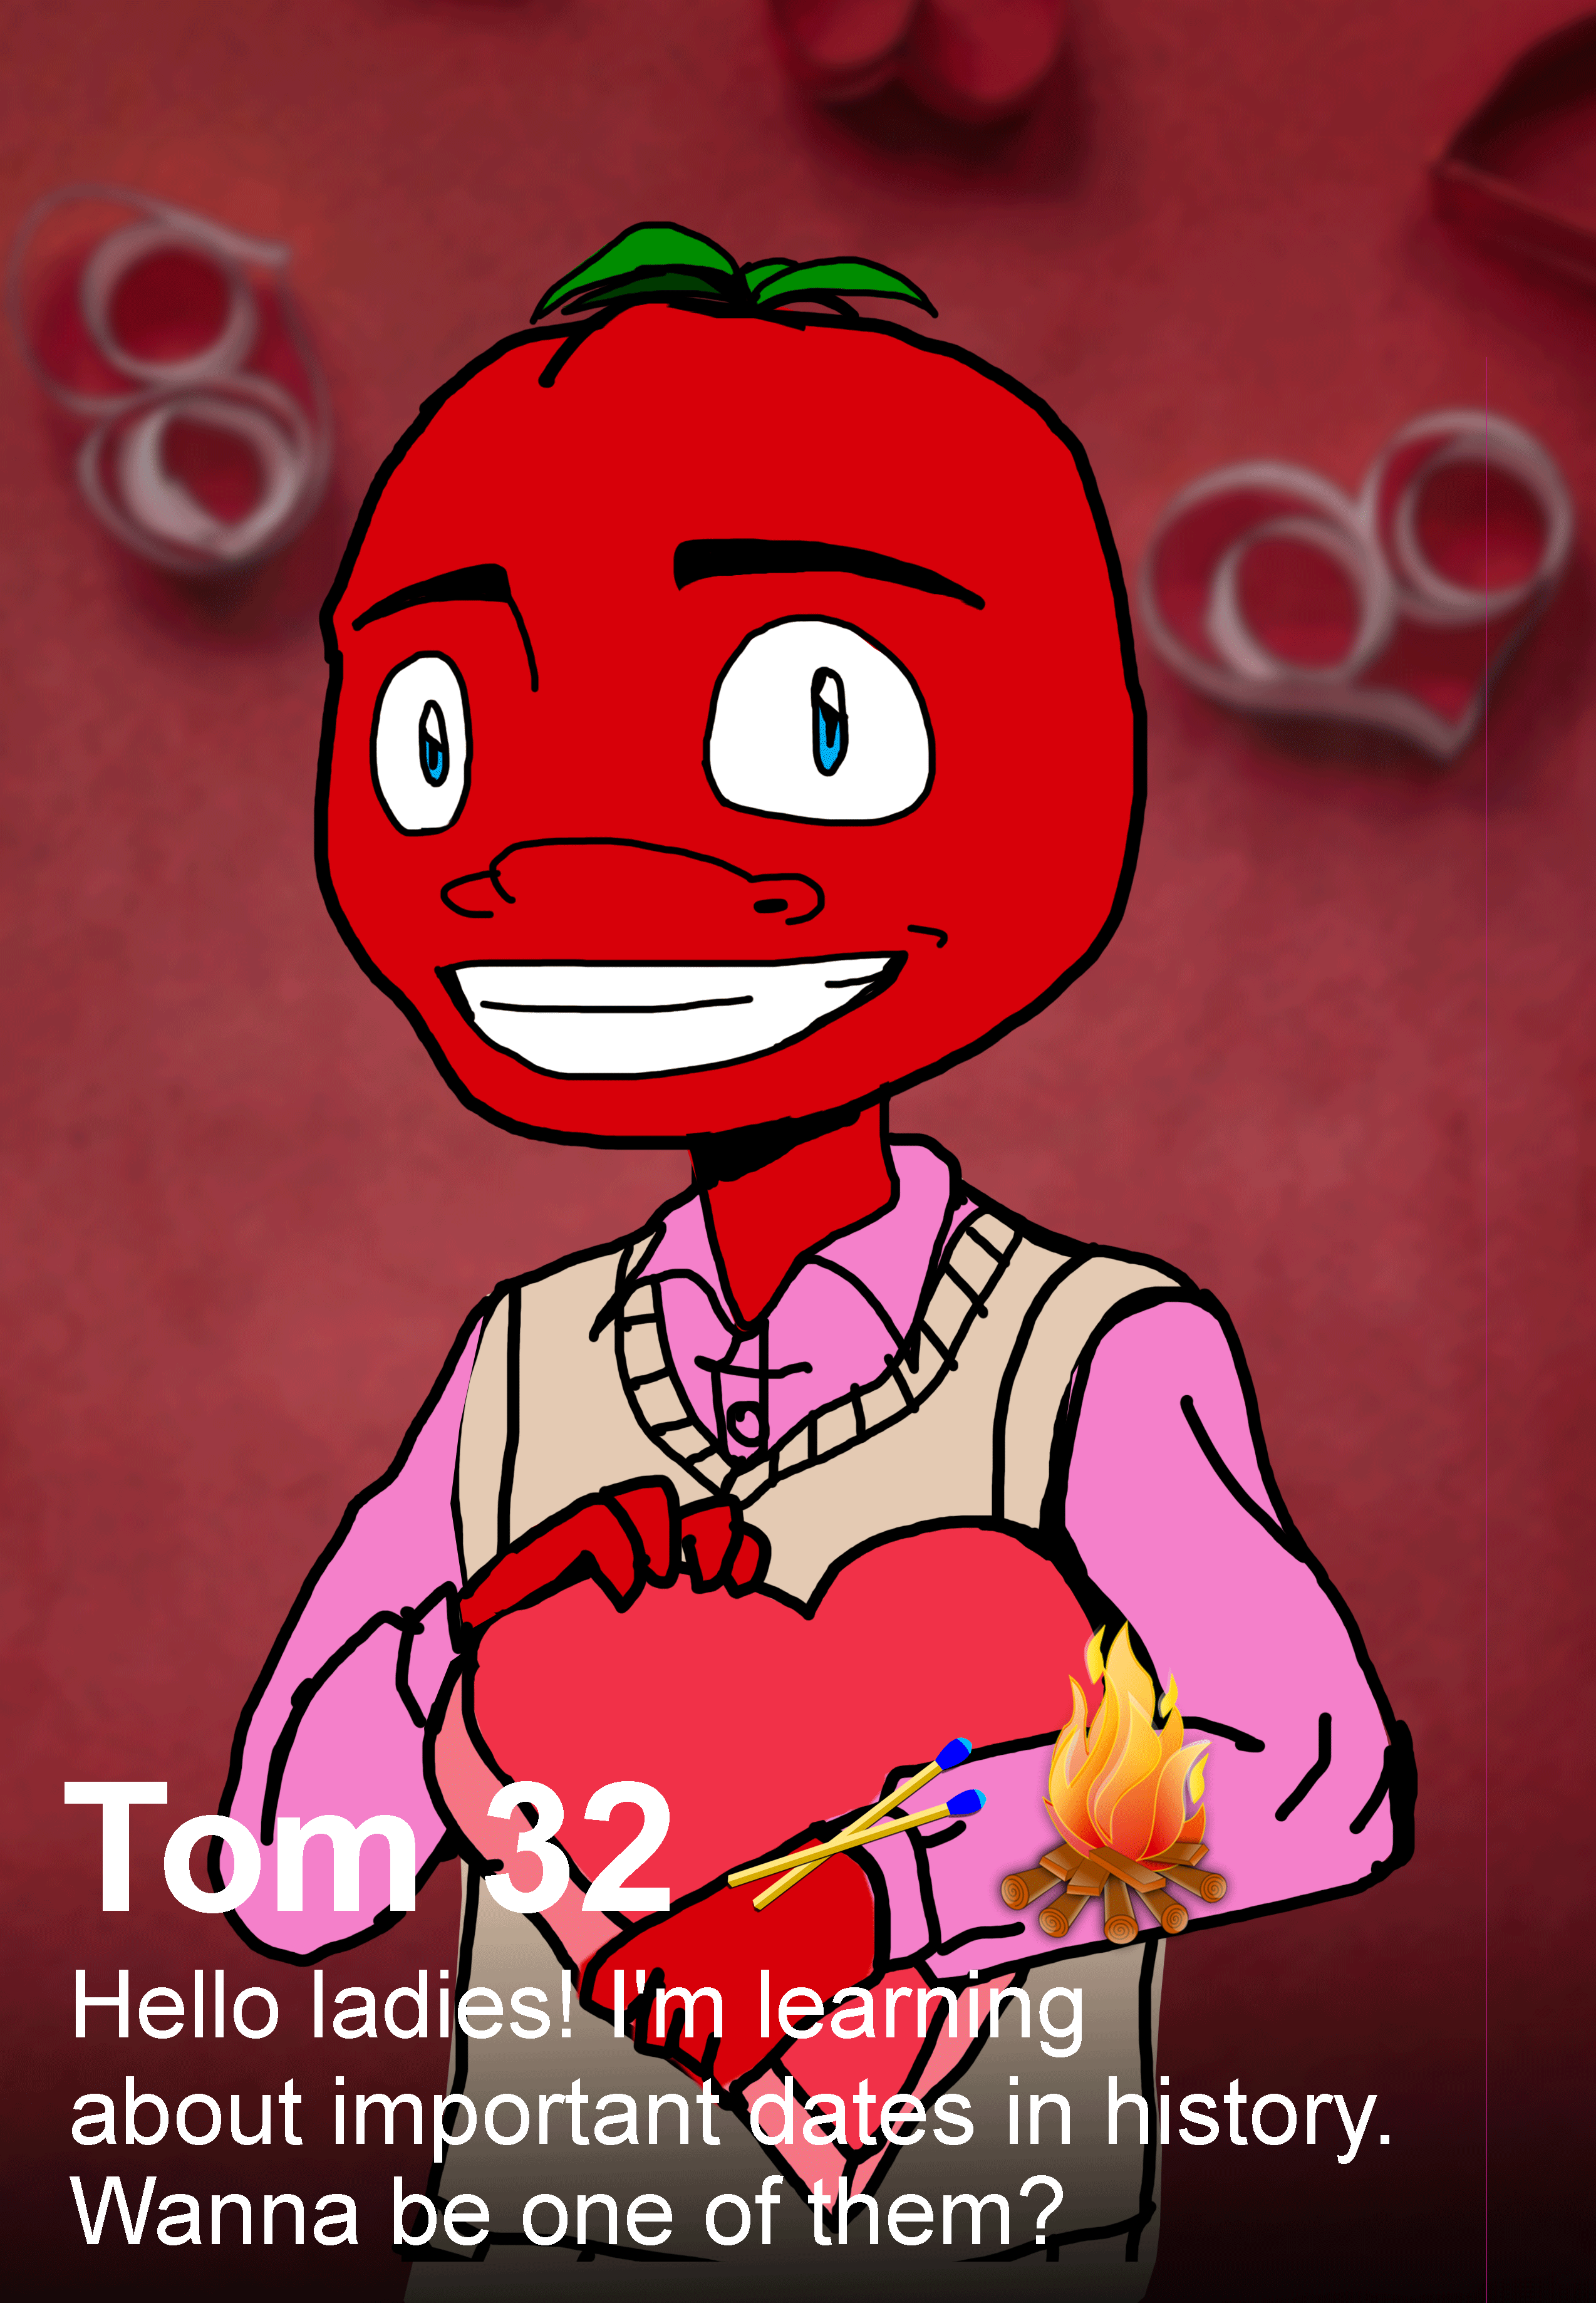 Tom Valentine's Day